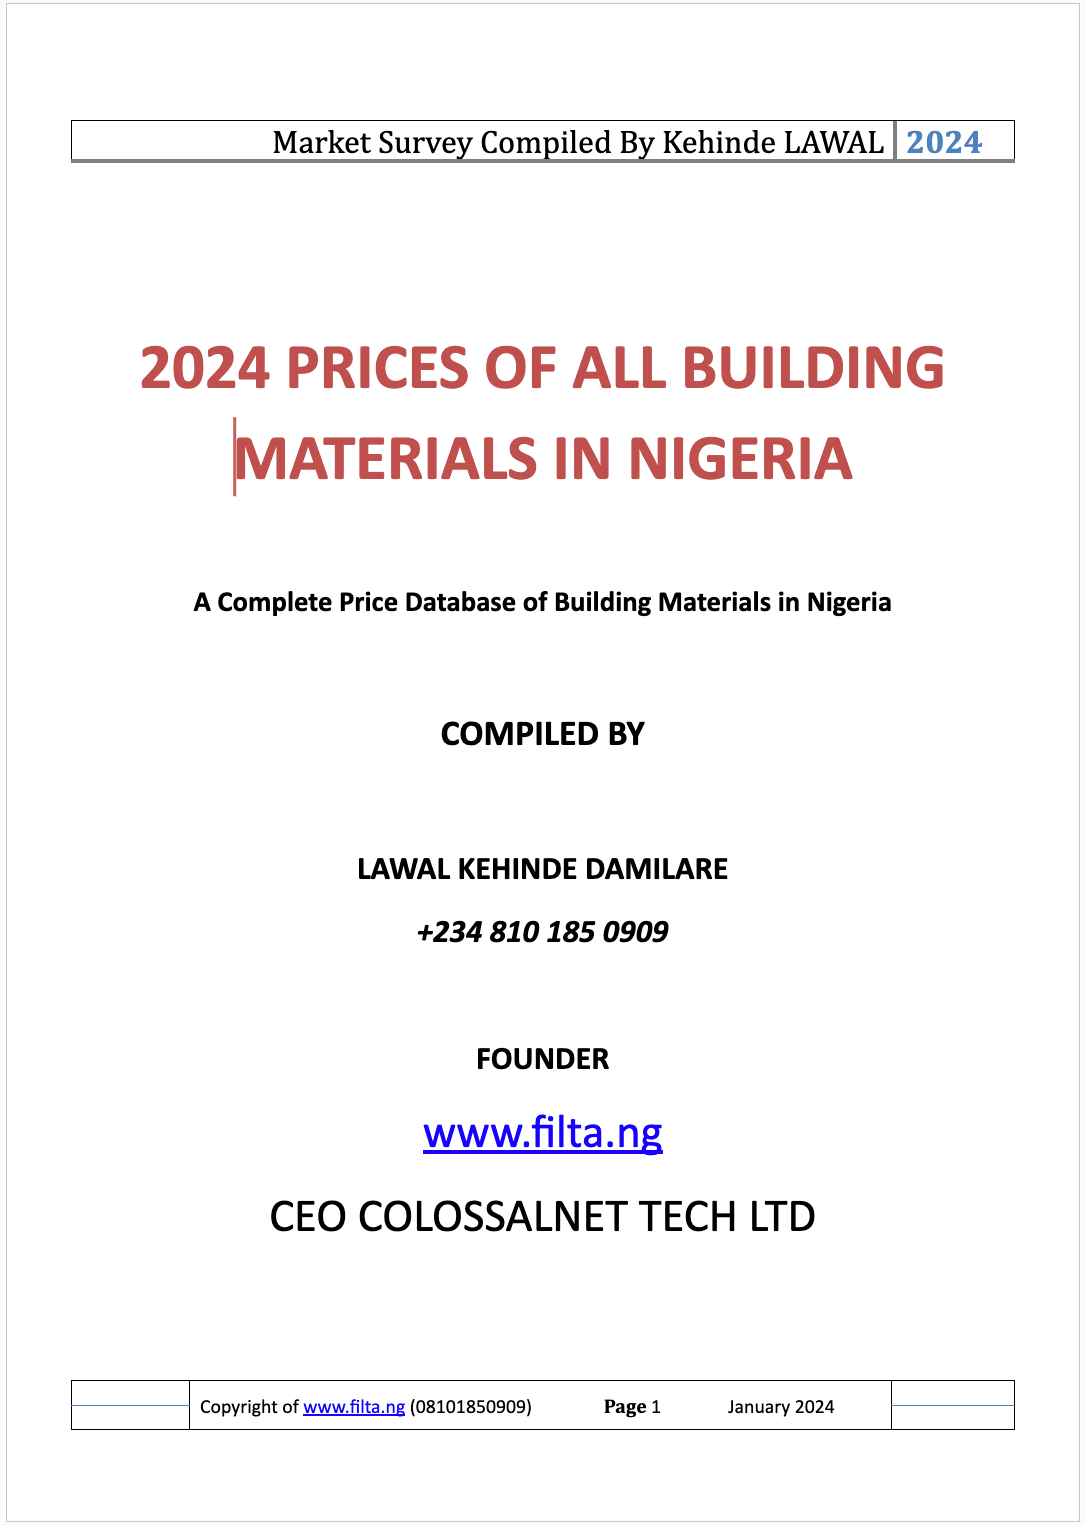 2024 Prices of Building Materials in Nigeria